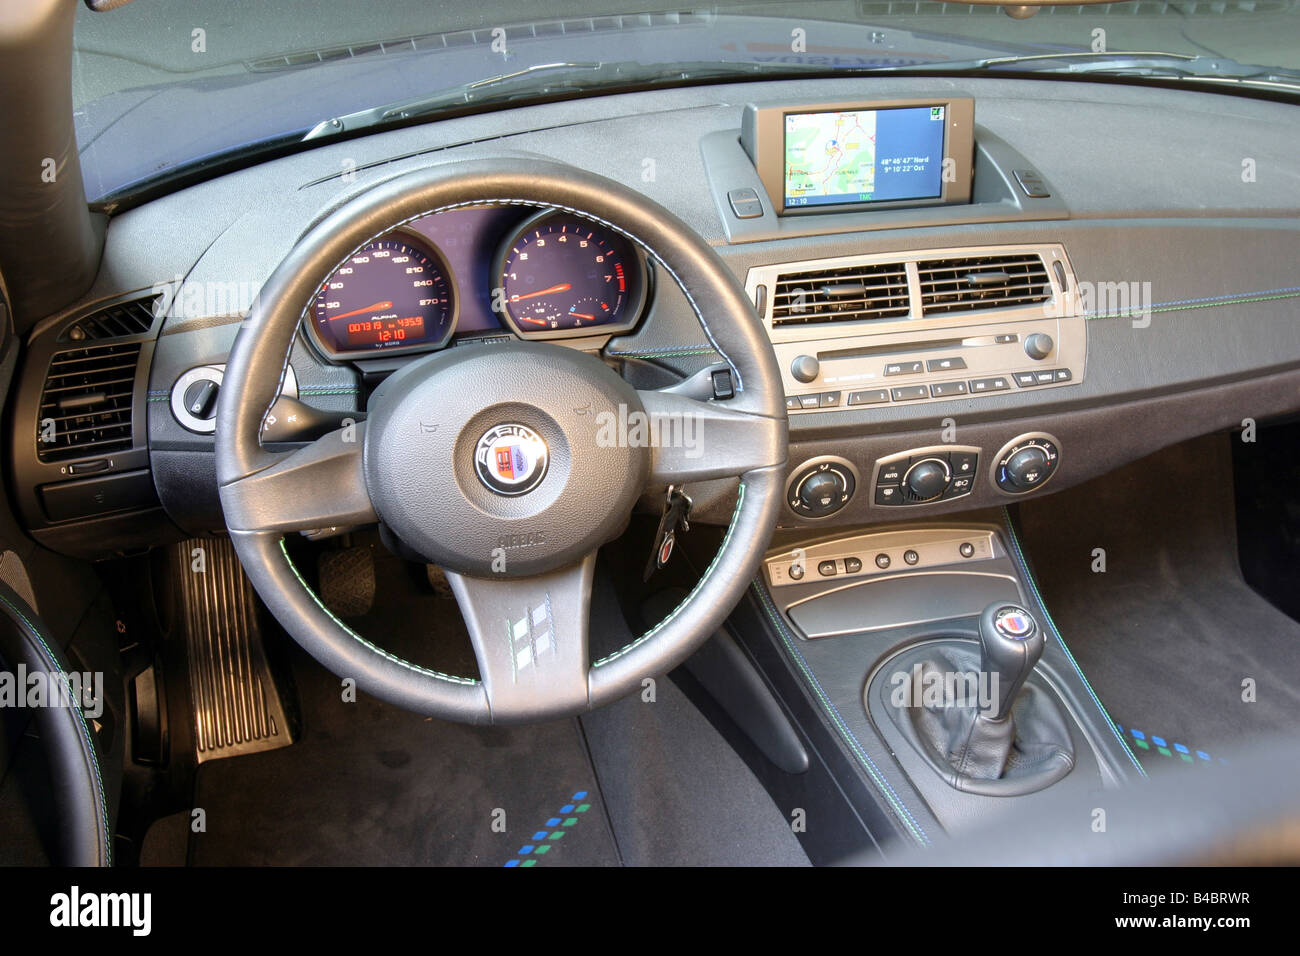 Car, BMW Alpina Roadster S 3.4 / Alpina Z4 3.4S, Convertible, interior view, Interior view, Cockpit, technique/accessory, access Stock Photo